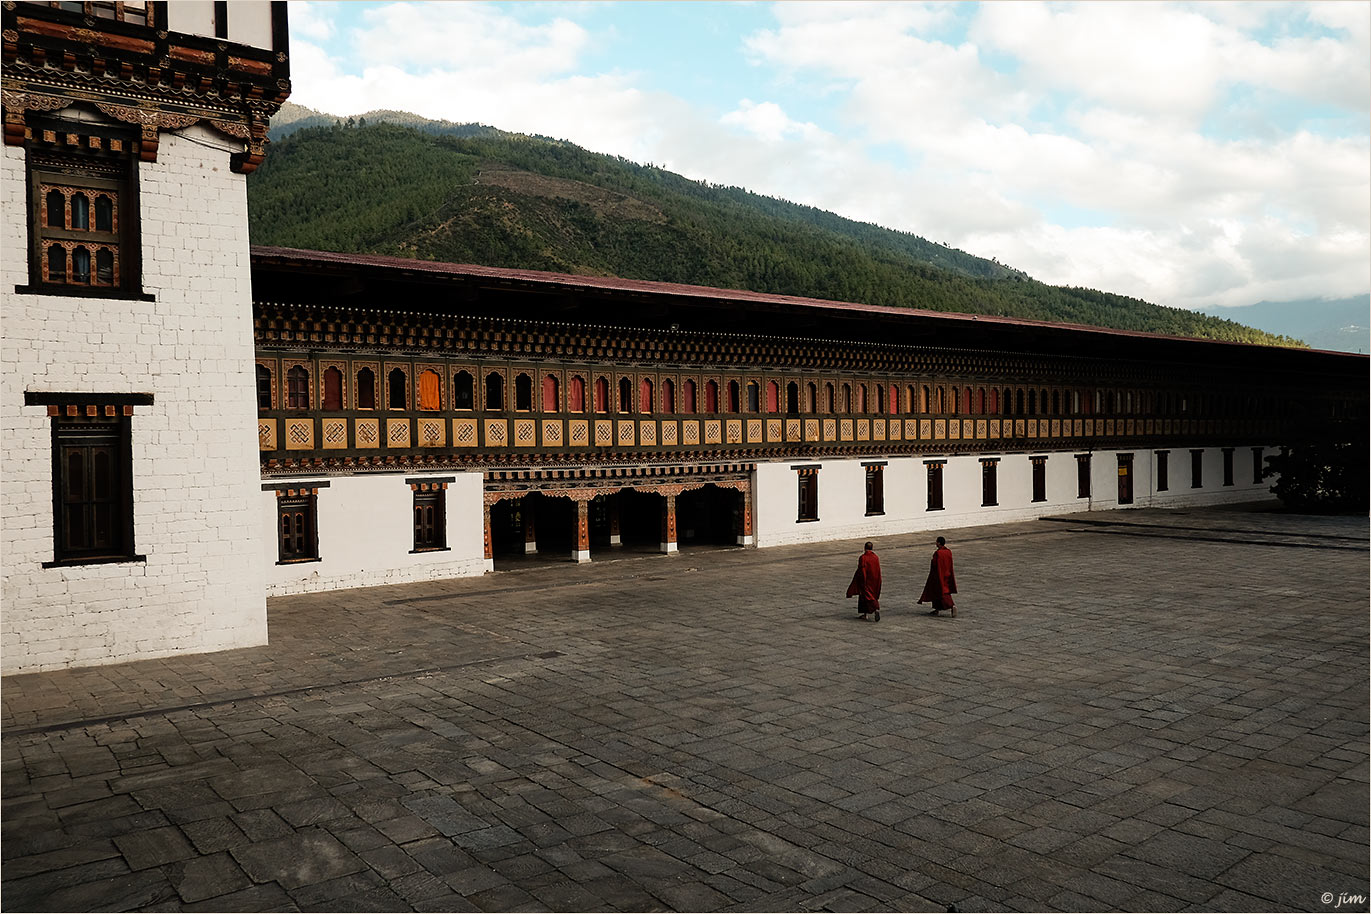 Tashichho Dzong Fortress